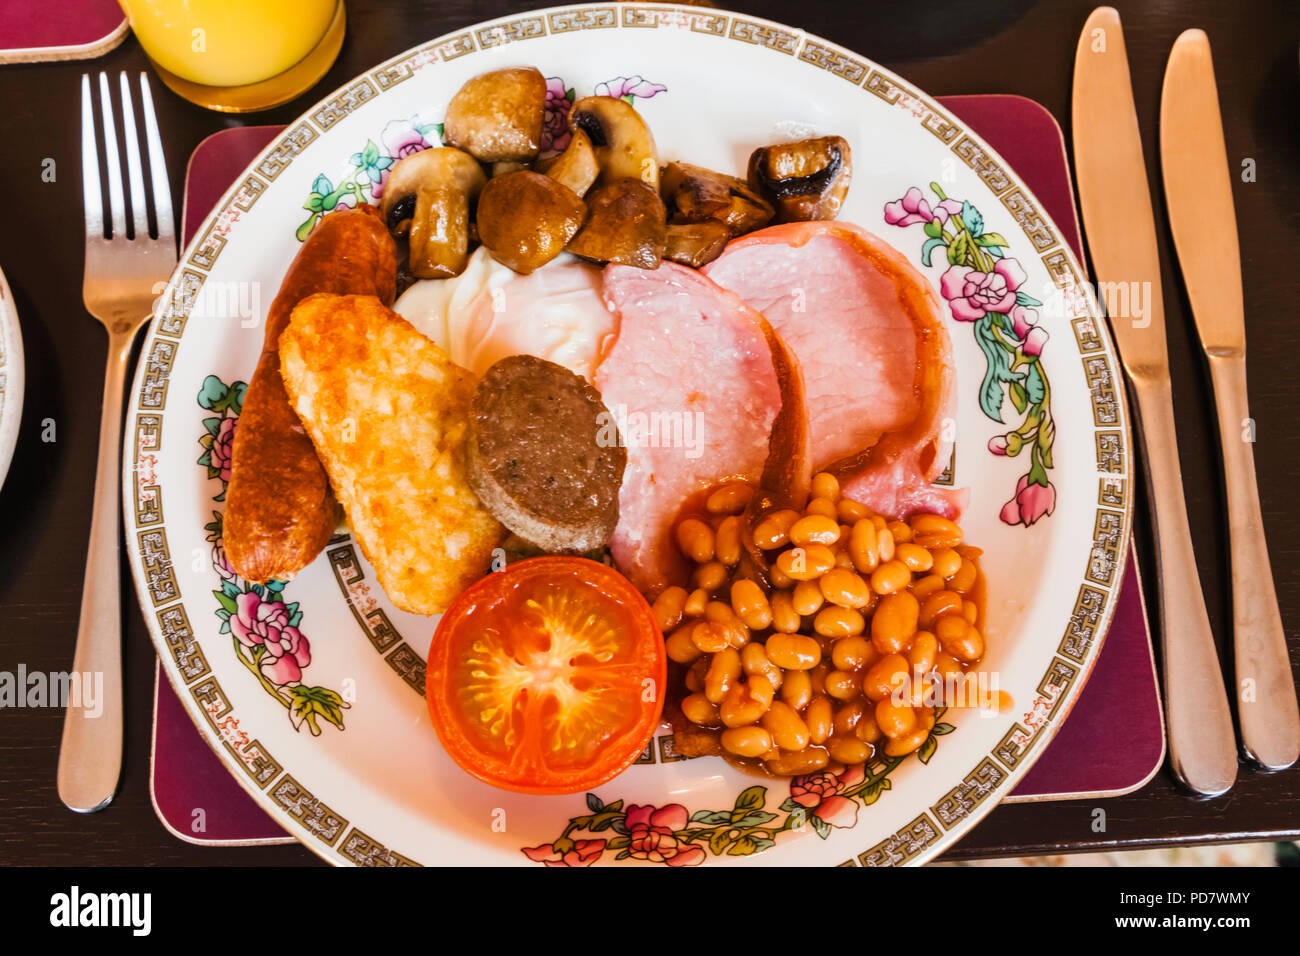 Inglaterra, Londres, el típico desayuno inglés tradicional Foto de stock